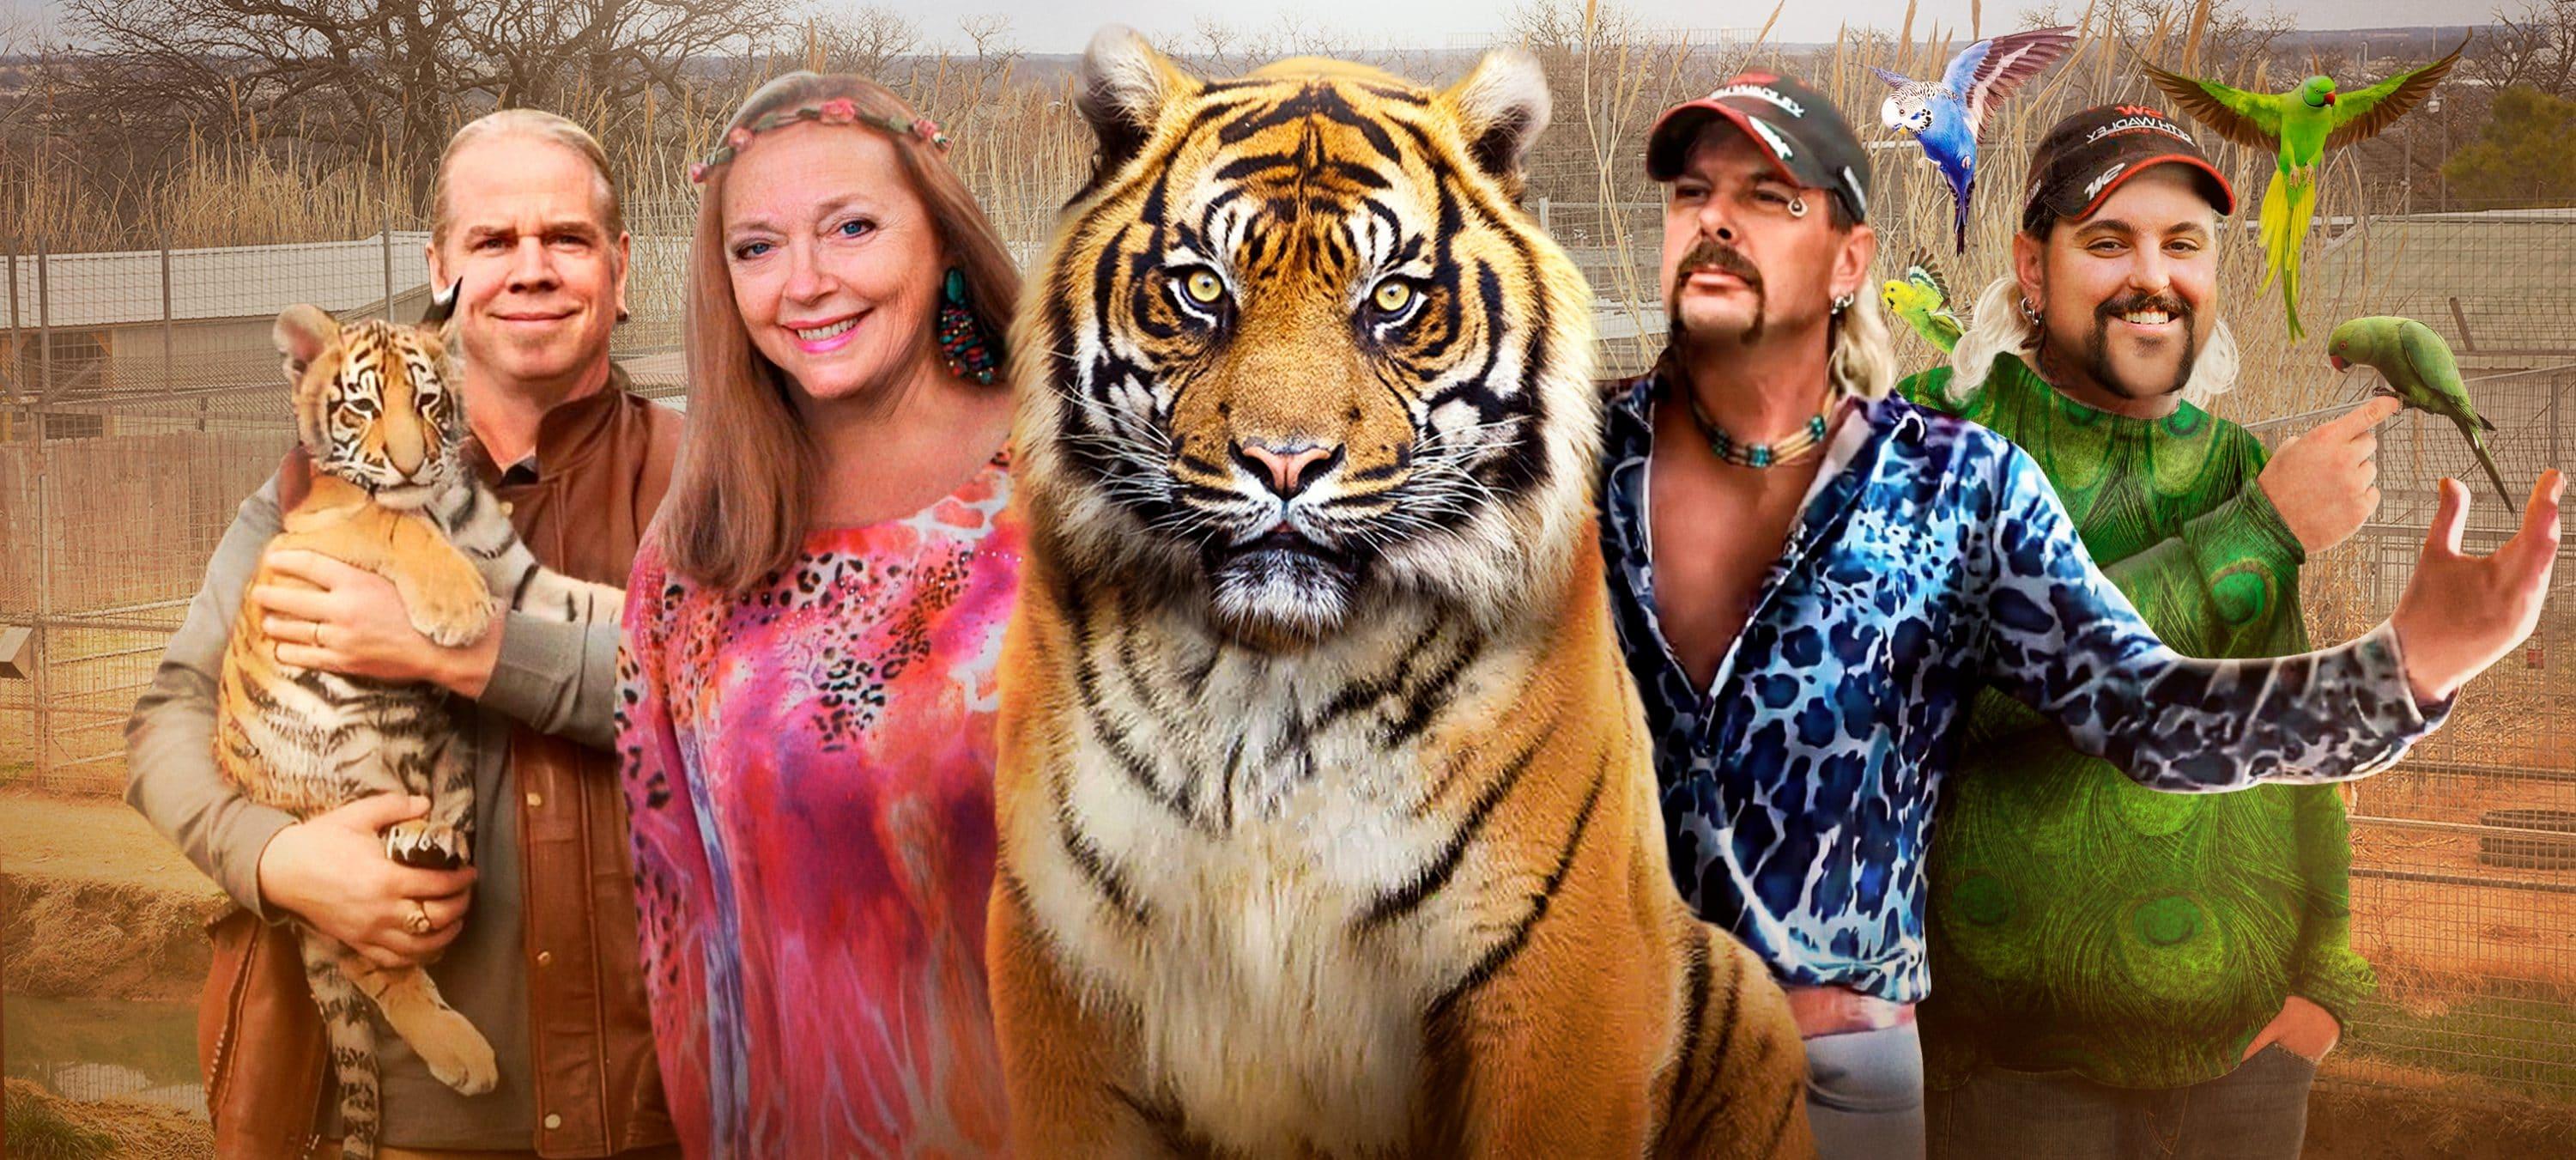 Tiger King: Exótico e Bizarro